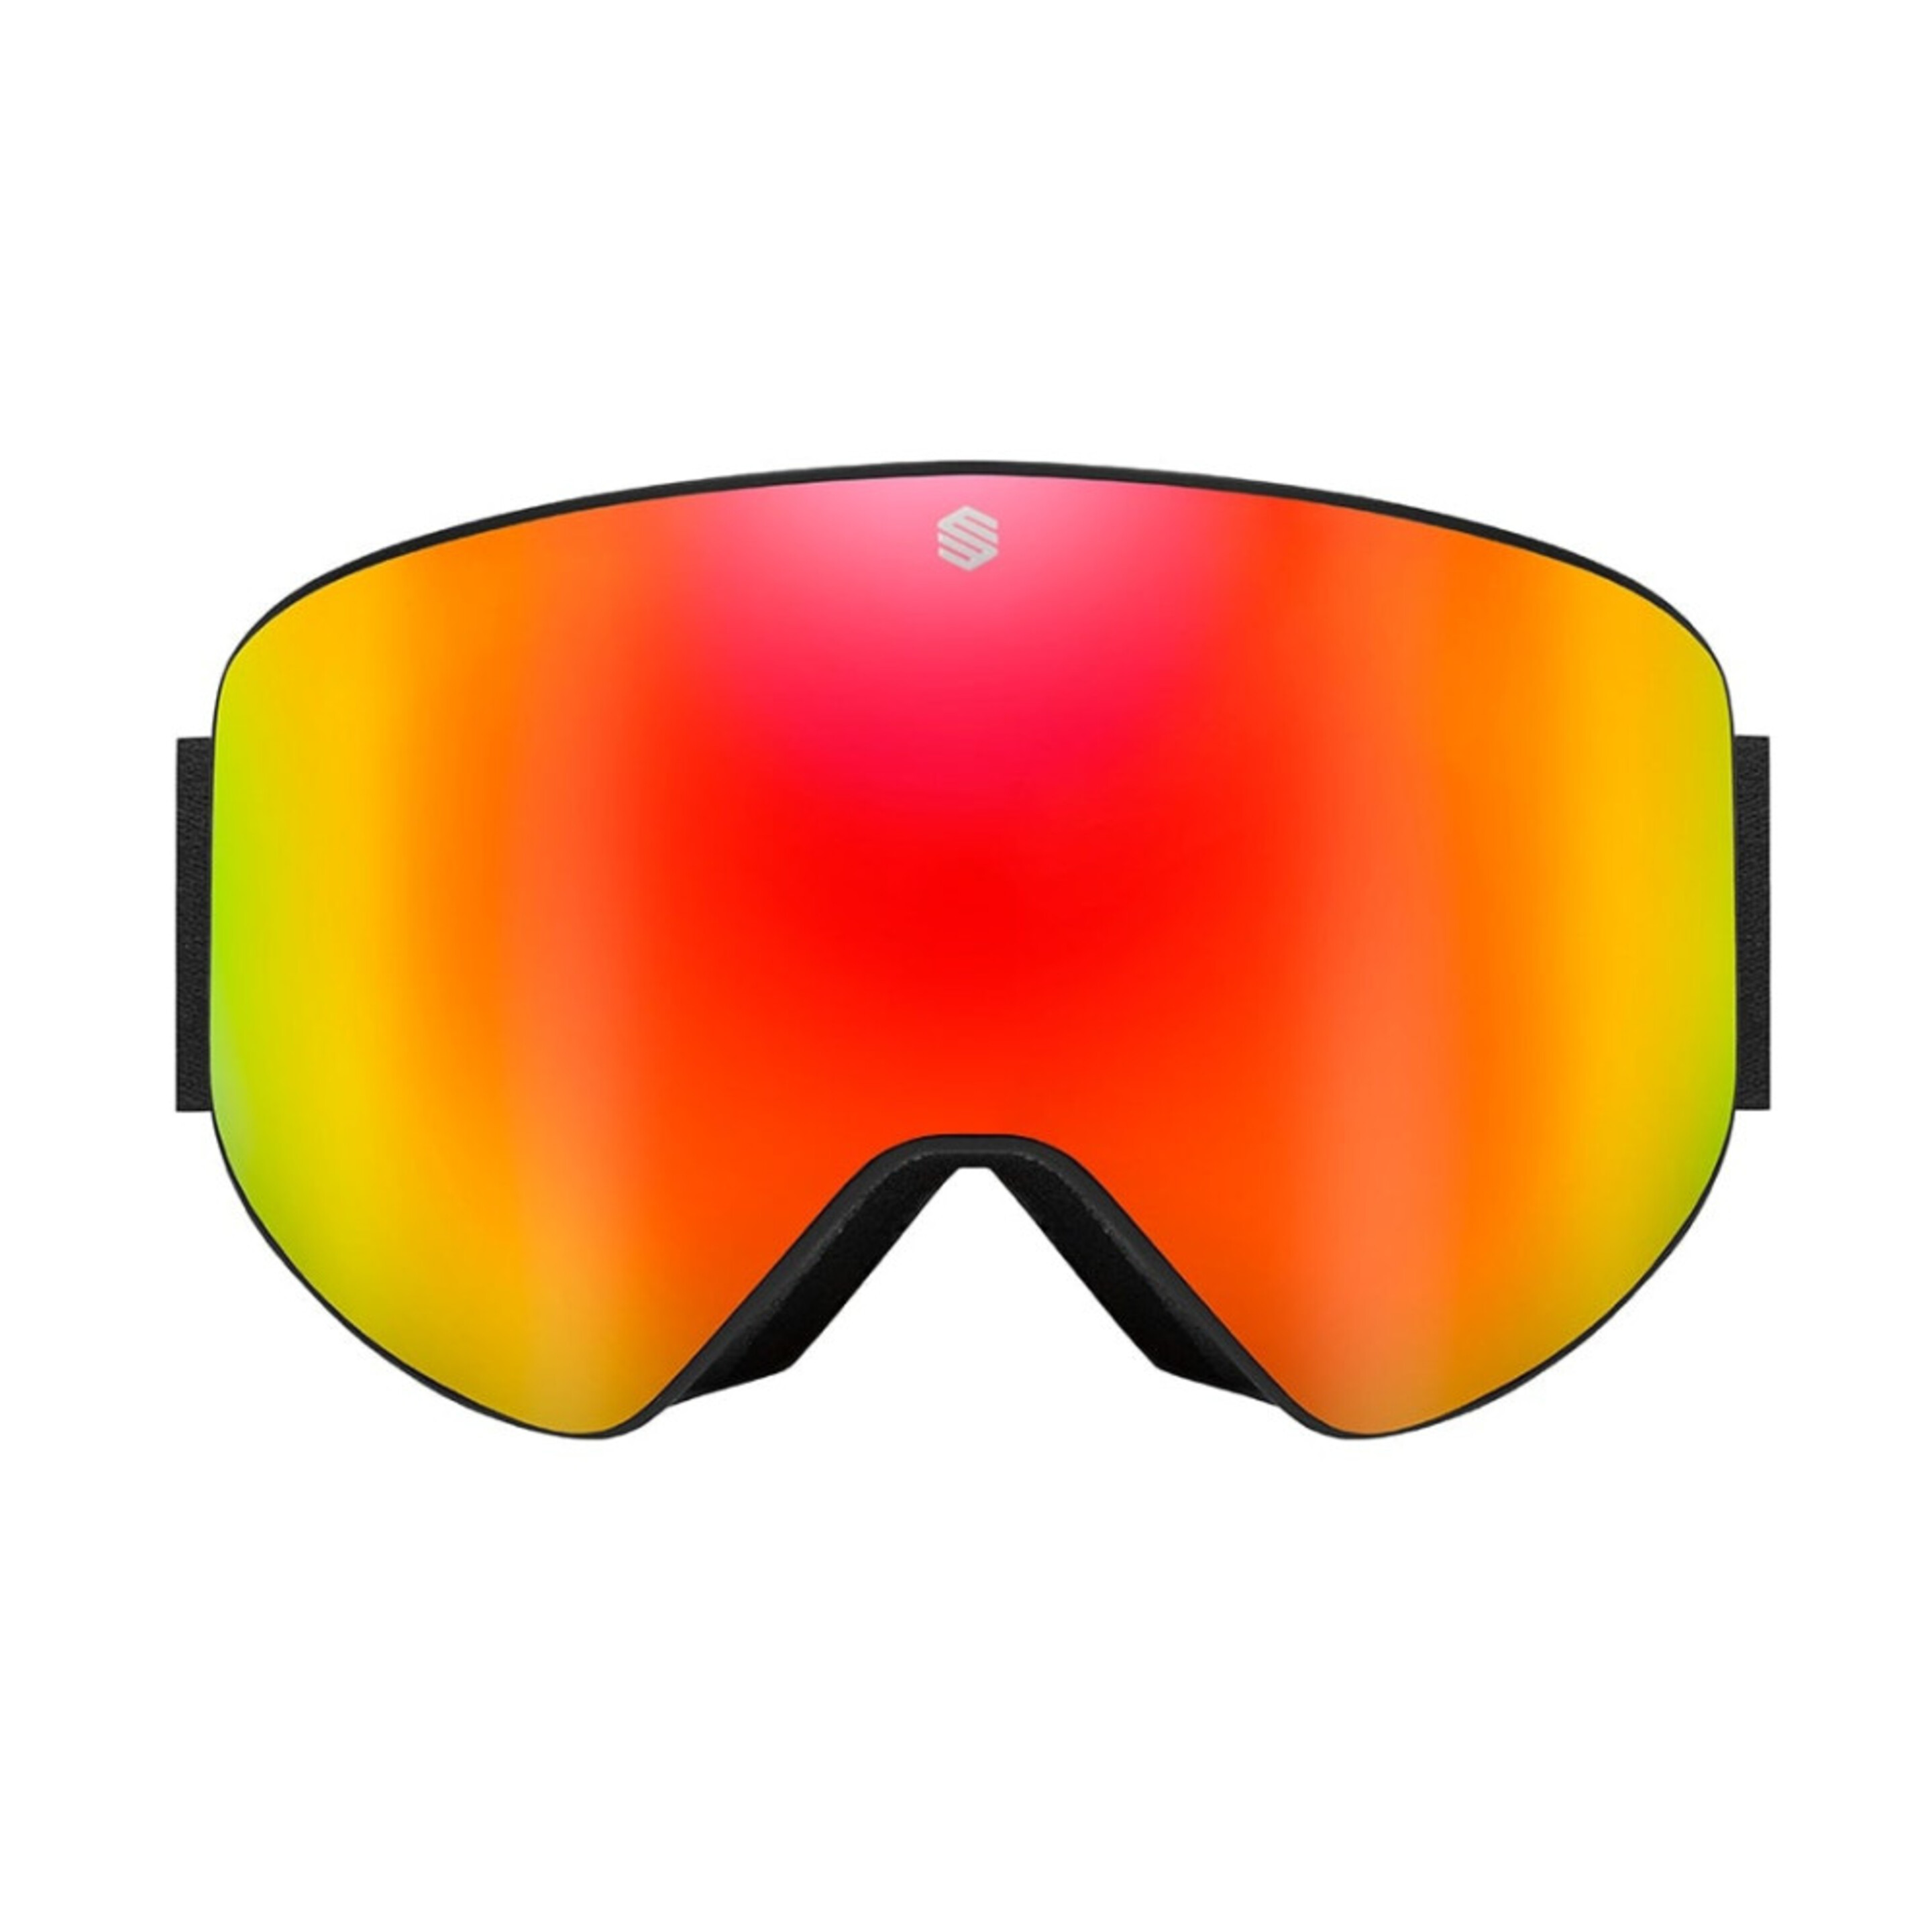 Gafas De Sol Para Esquí/snow Siroko Gx Whistler